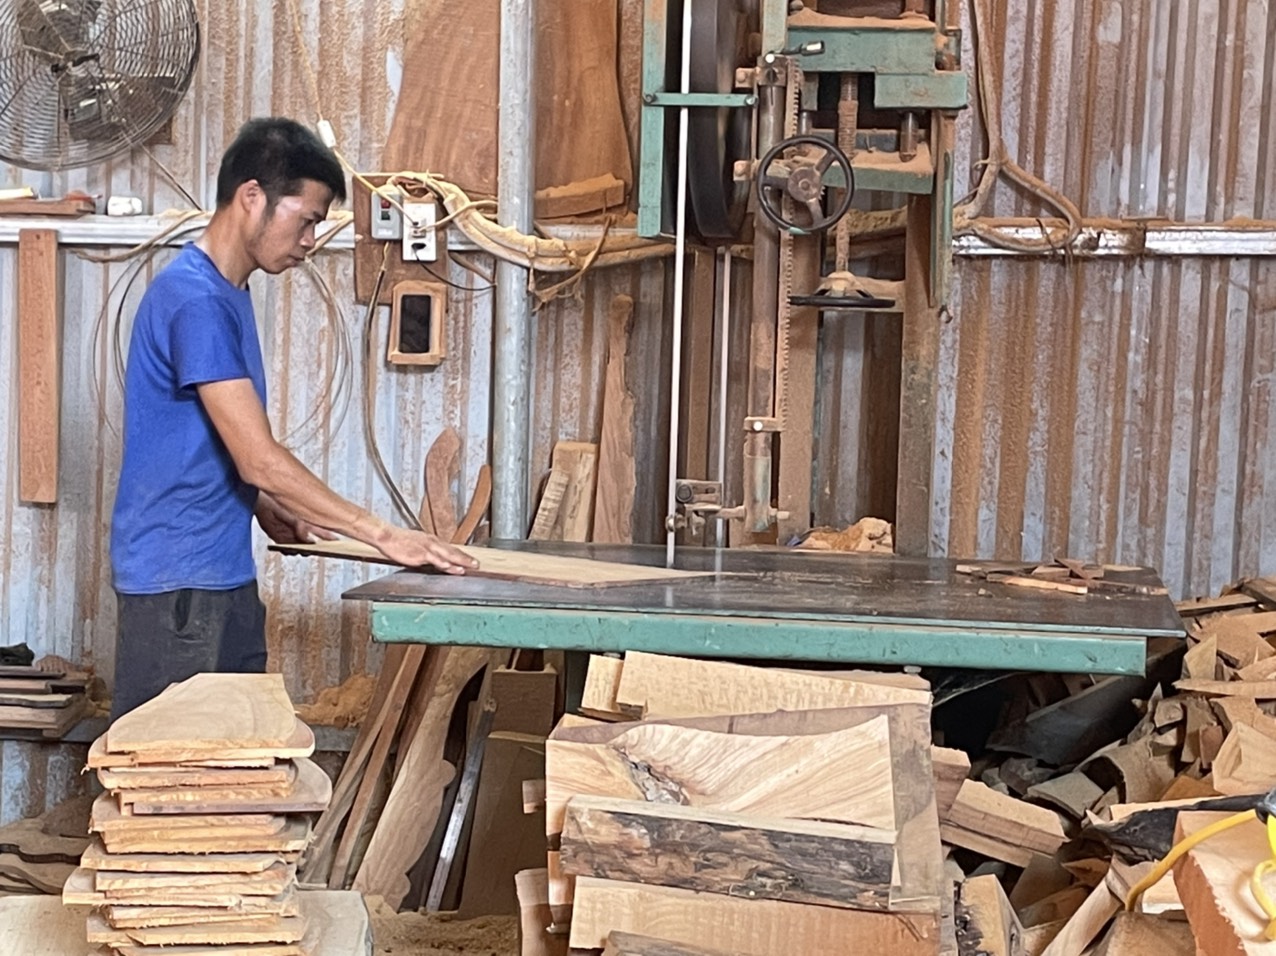 An toàn vệ sinh lao động làng nghề ở huyện Phú Xuyên đang bị bỏ ngỏ